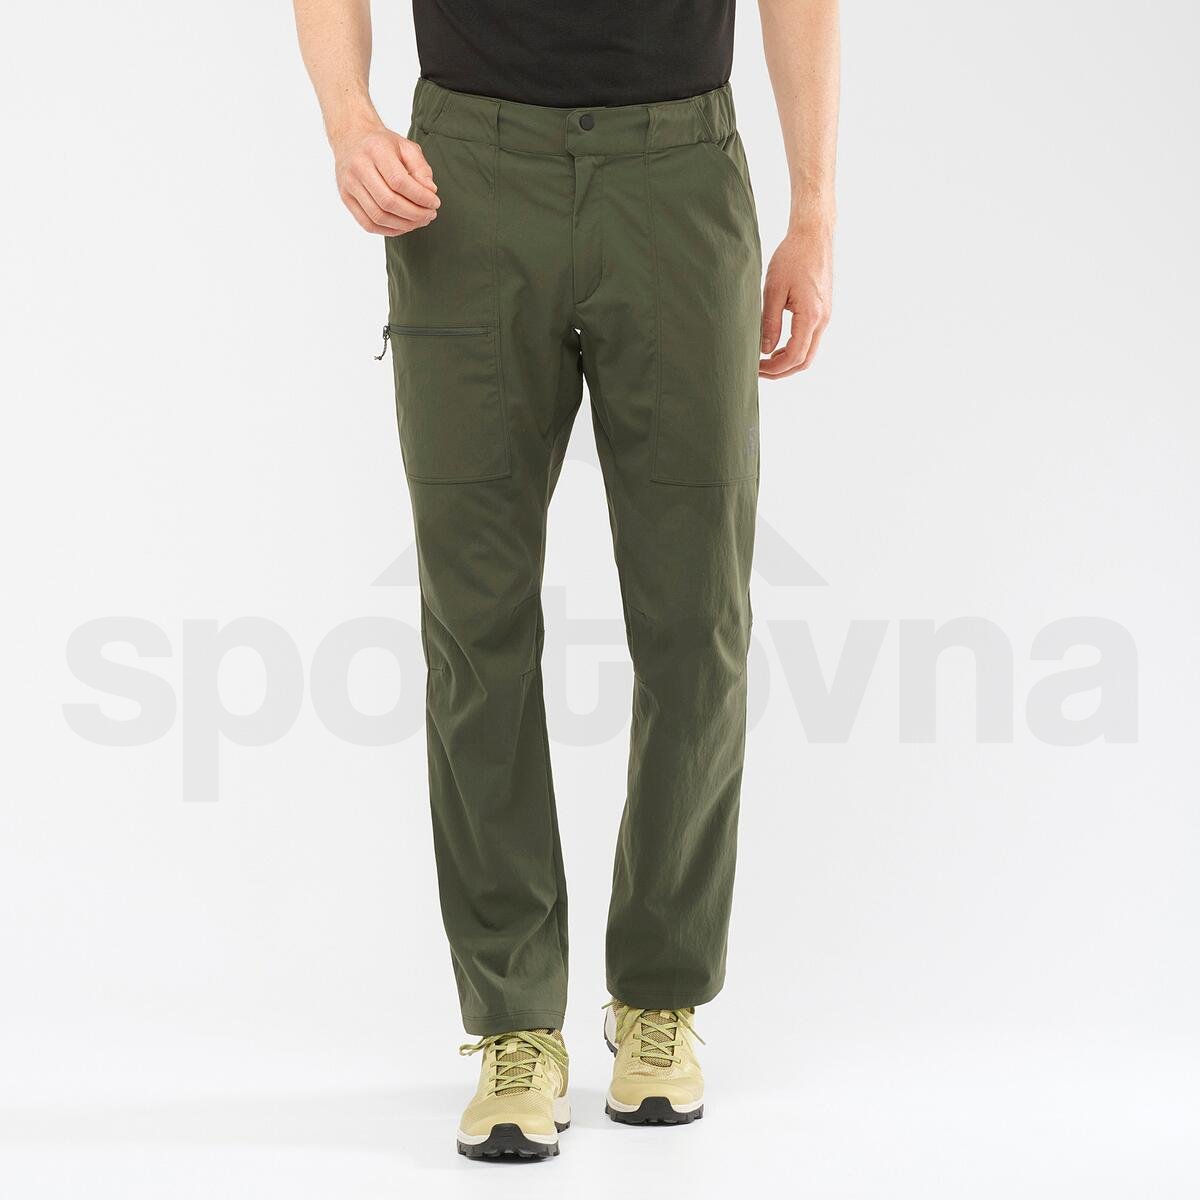 Kalhoty Salomon OUTRACK PANTS M - zelená (prodloužená délka)